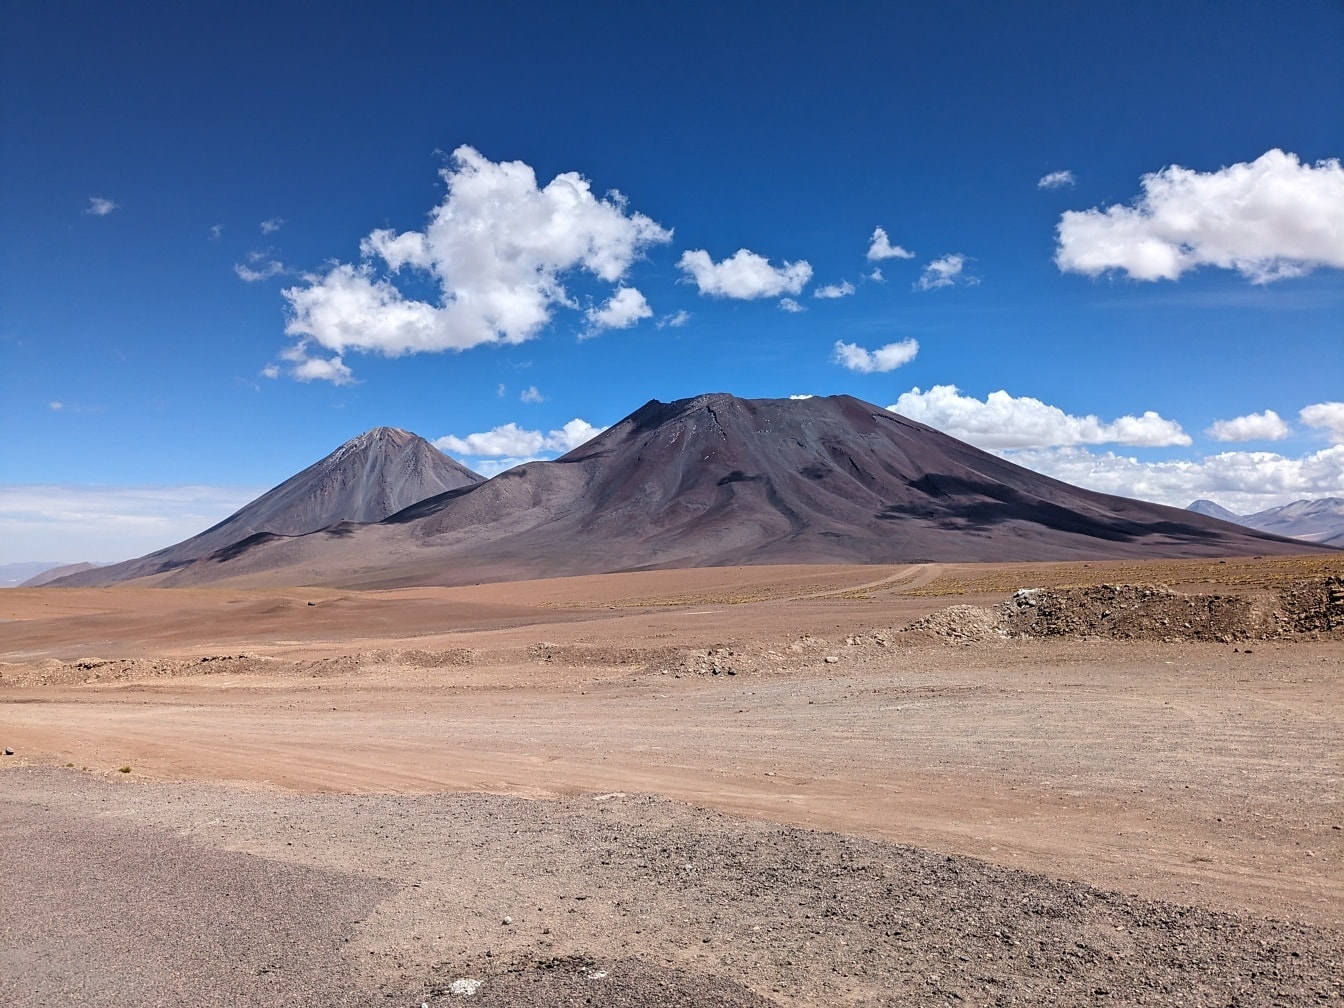 Atacama-Wüste, der trockenste Ort der Welt mit Vulkan an der Grenze zwischen Bolivien und Chile